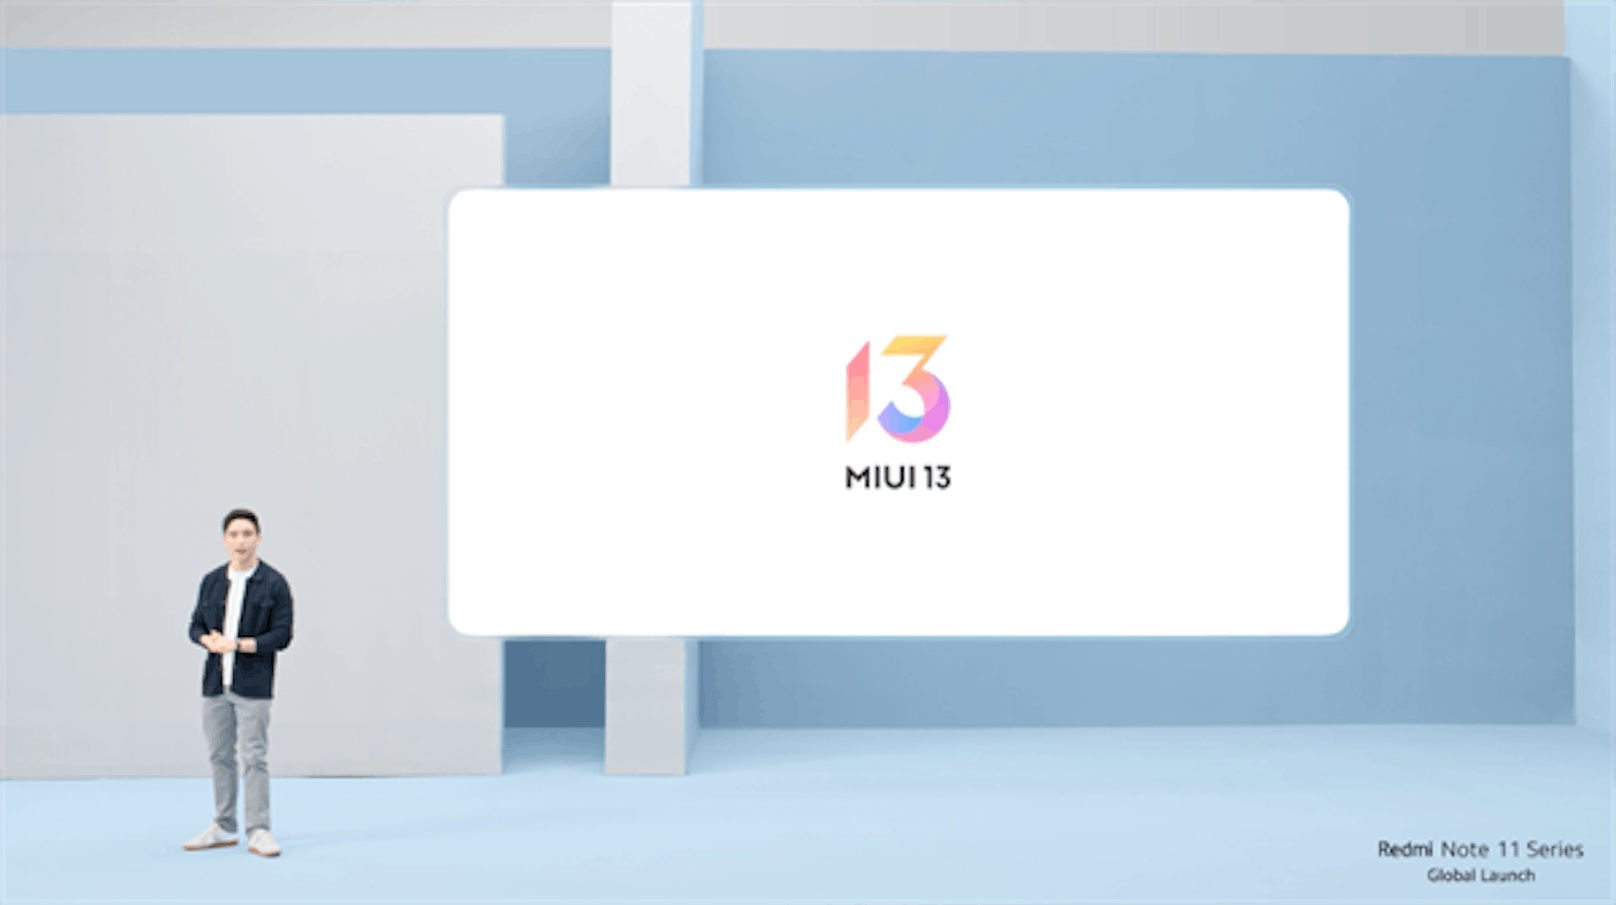 Xiaomi führt MIUI 13 ein und verbessert das Nutzererlebnis sowie Effizienz und Personalisierung.